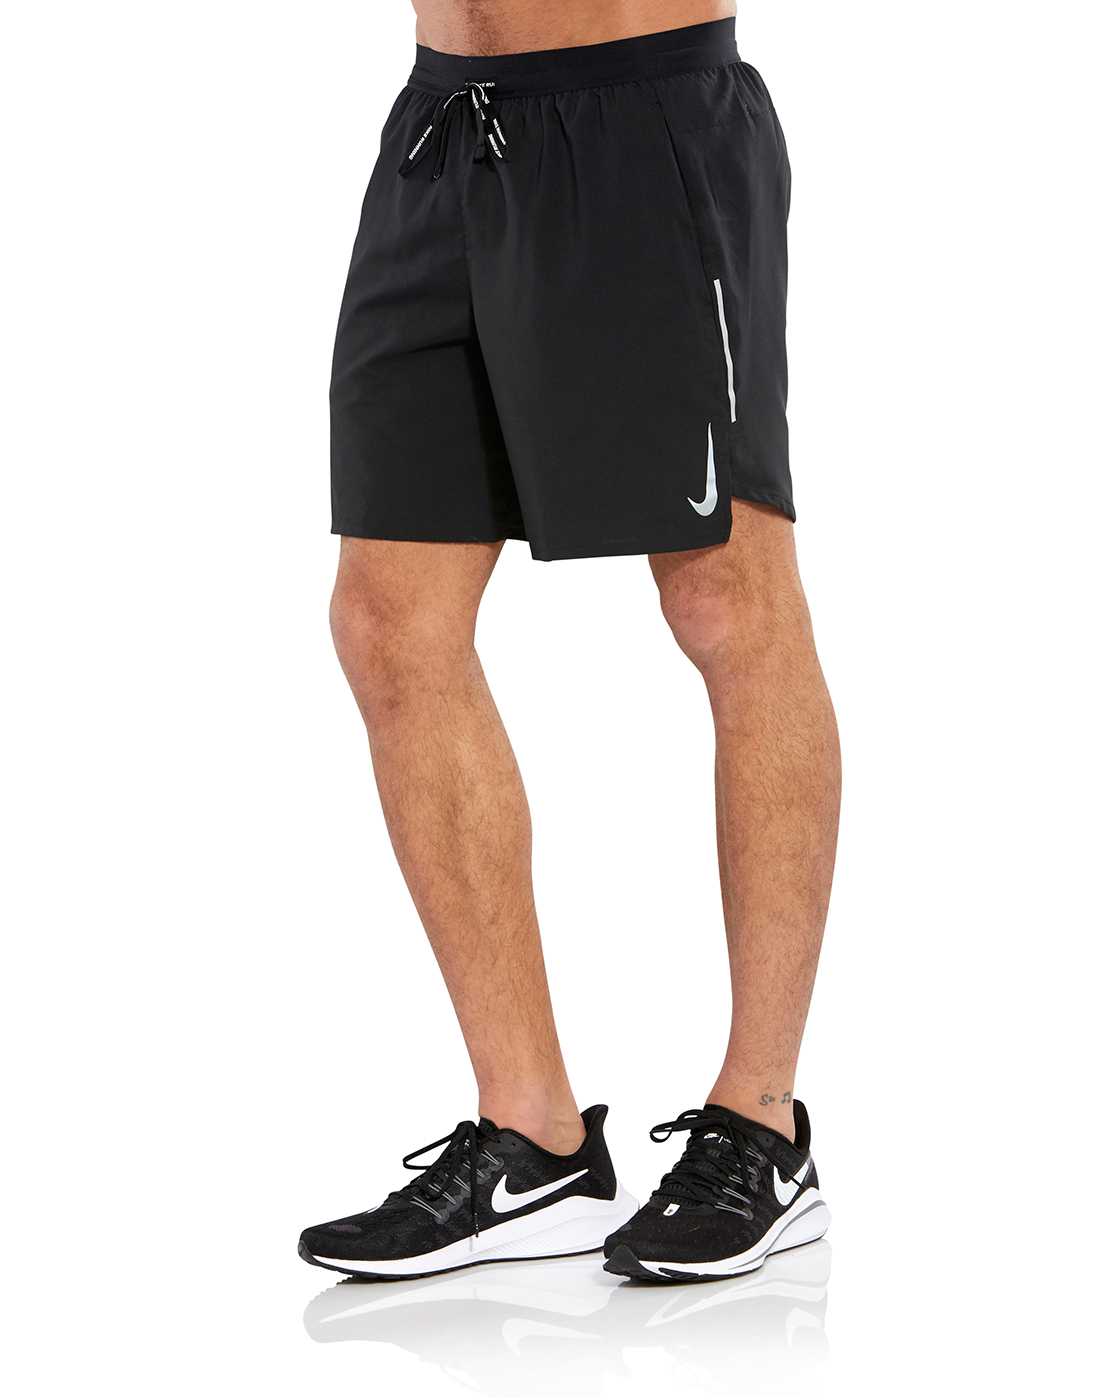 nike 7 inch running shorts